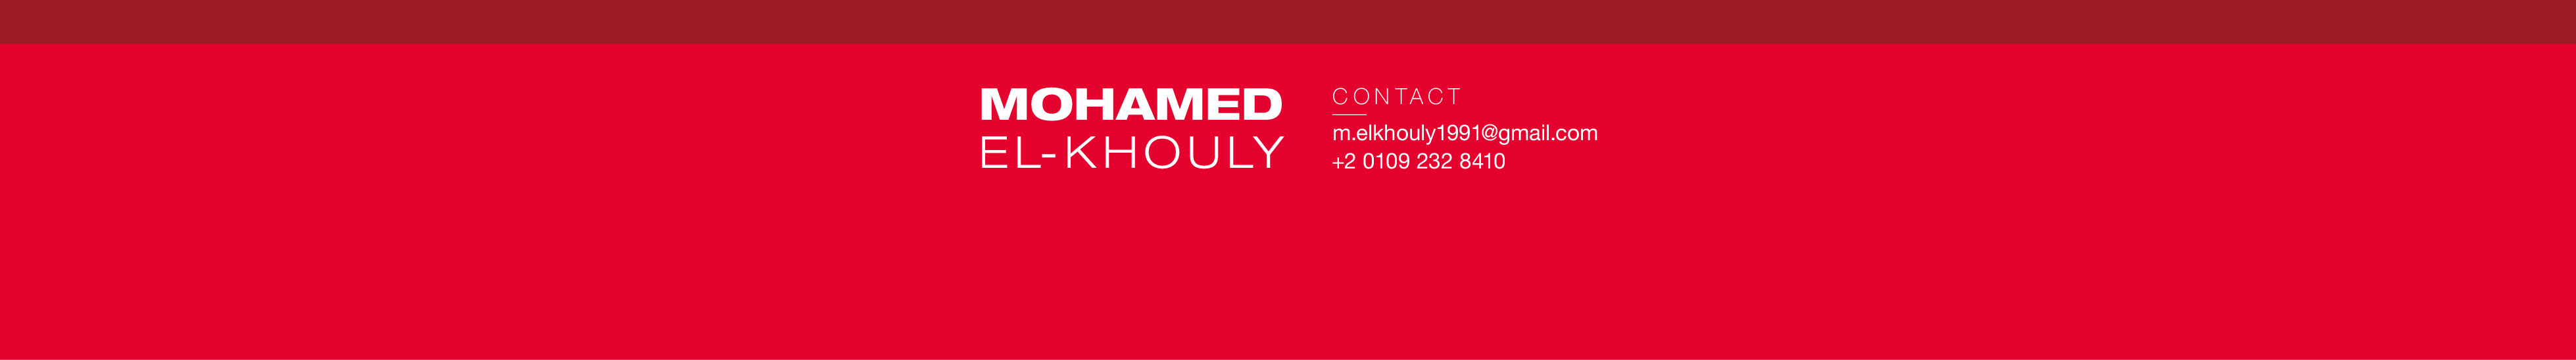 Mohamed Elkhouly's profile banner